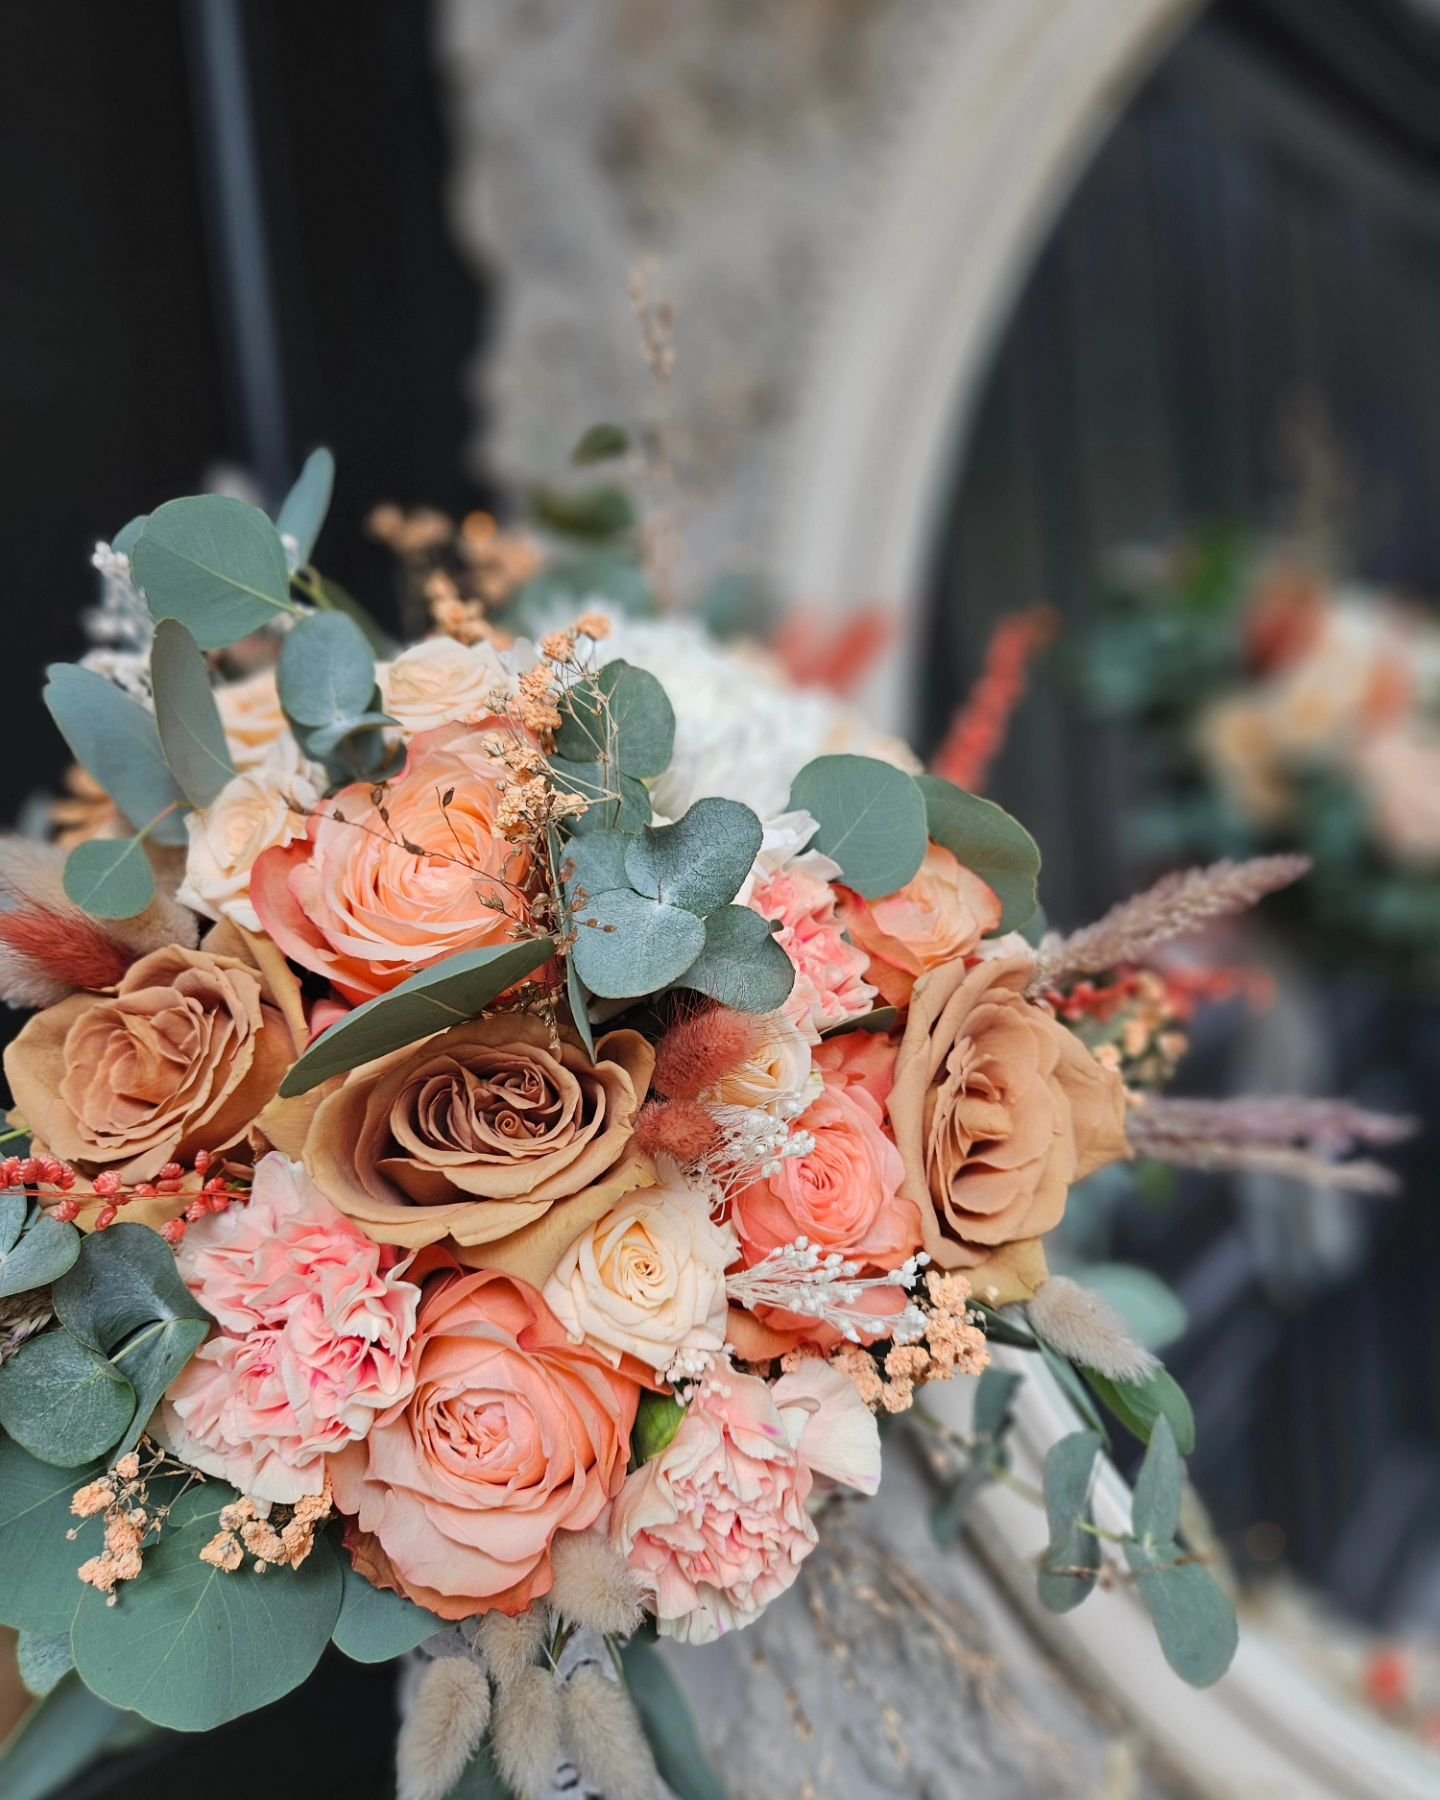 Le bouquet de Caroline, mari&eacute;e d'hier, vous a bien plu en story, alors je le remets par ici. 🤍🤍🤍

Je vous souhaite un doux dimanche.

Sophie 

#mariage2025
#weddingday 
#bridalflowers
#terracotta 
#rose 
#bouquet
#semarierenvendee